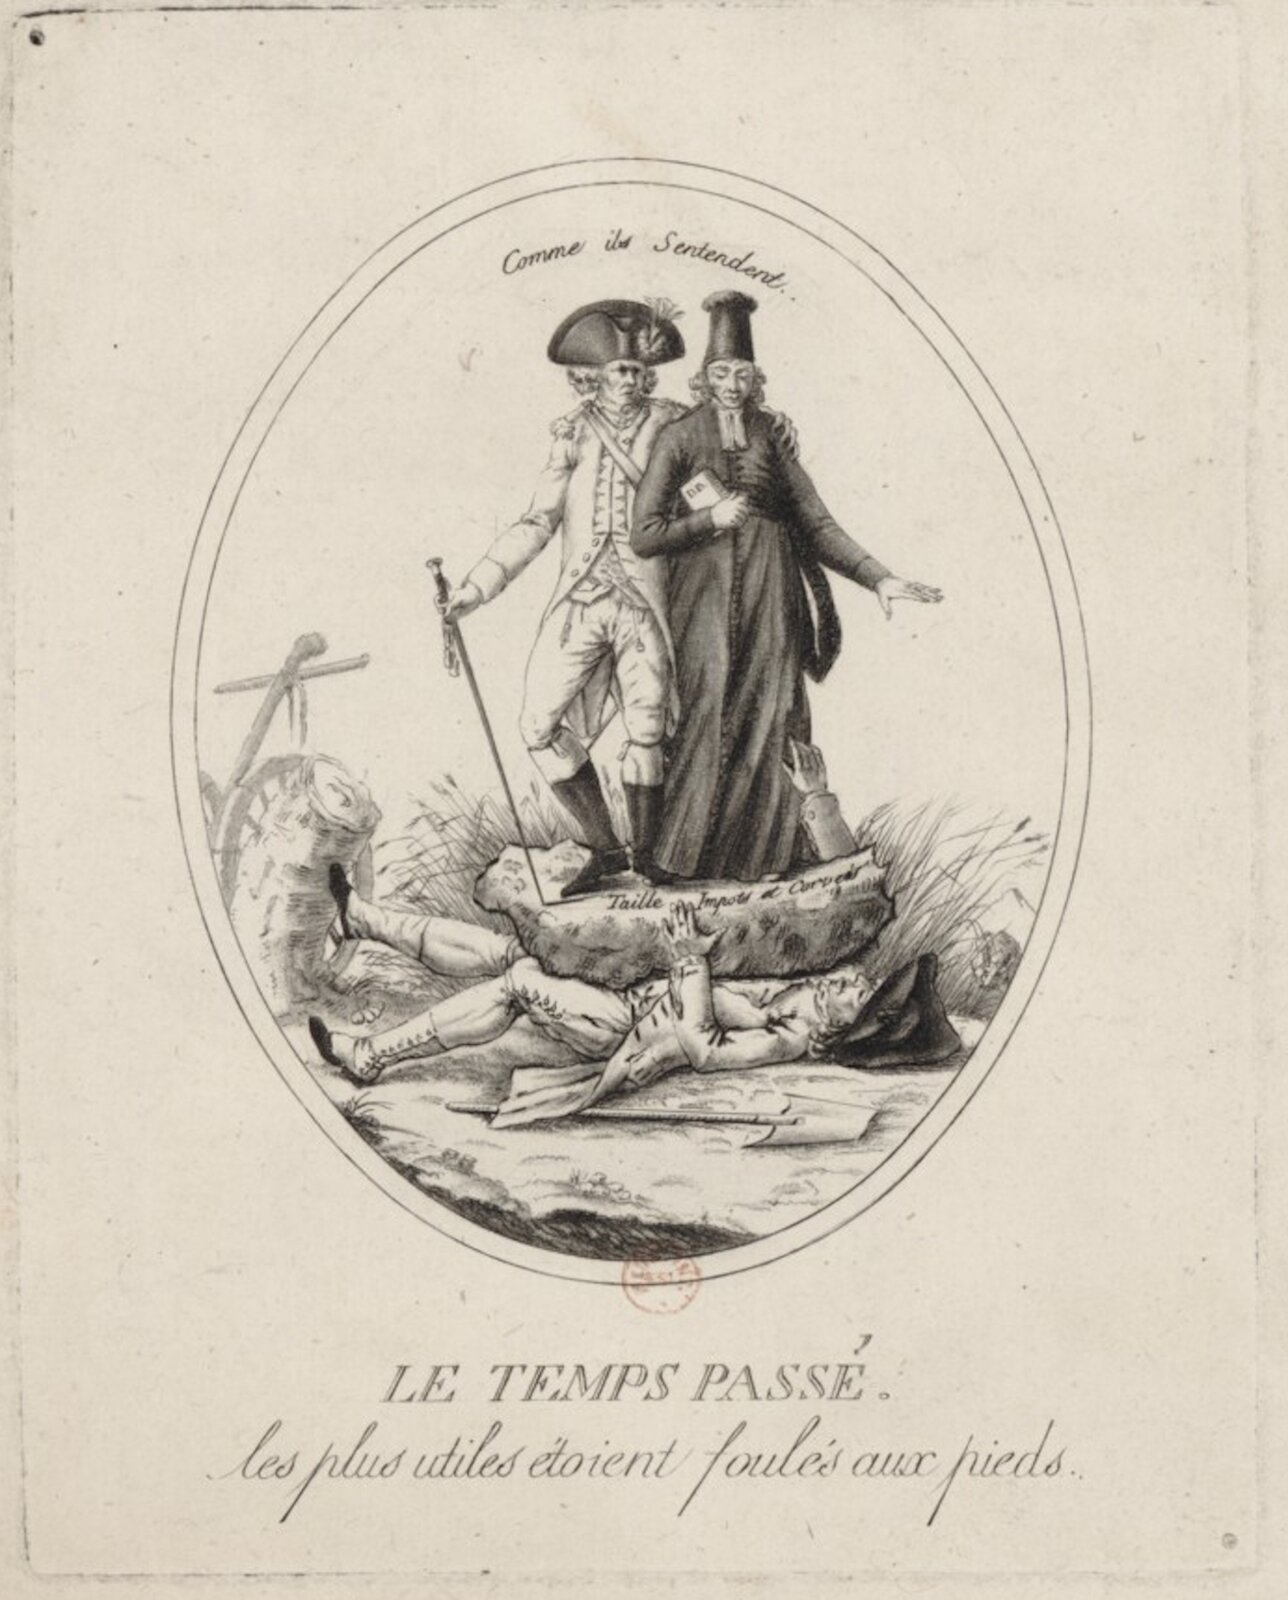 Ilustracja przedstawia mężczyznę przygniecionego kamieniem. Na kamieniu stoi dwóch mężczyzn, jeden w tradycyjnym francuskim mundurze i półokrągłym nakryciu głowy obejmuje ramieniem drugiego ubranego w długie szaty trzymającego w ręku książkę.